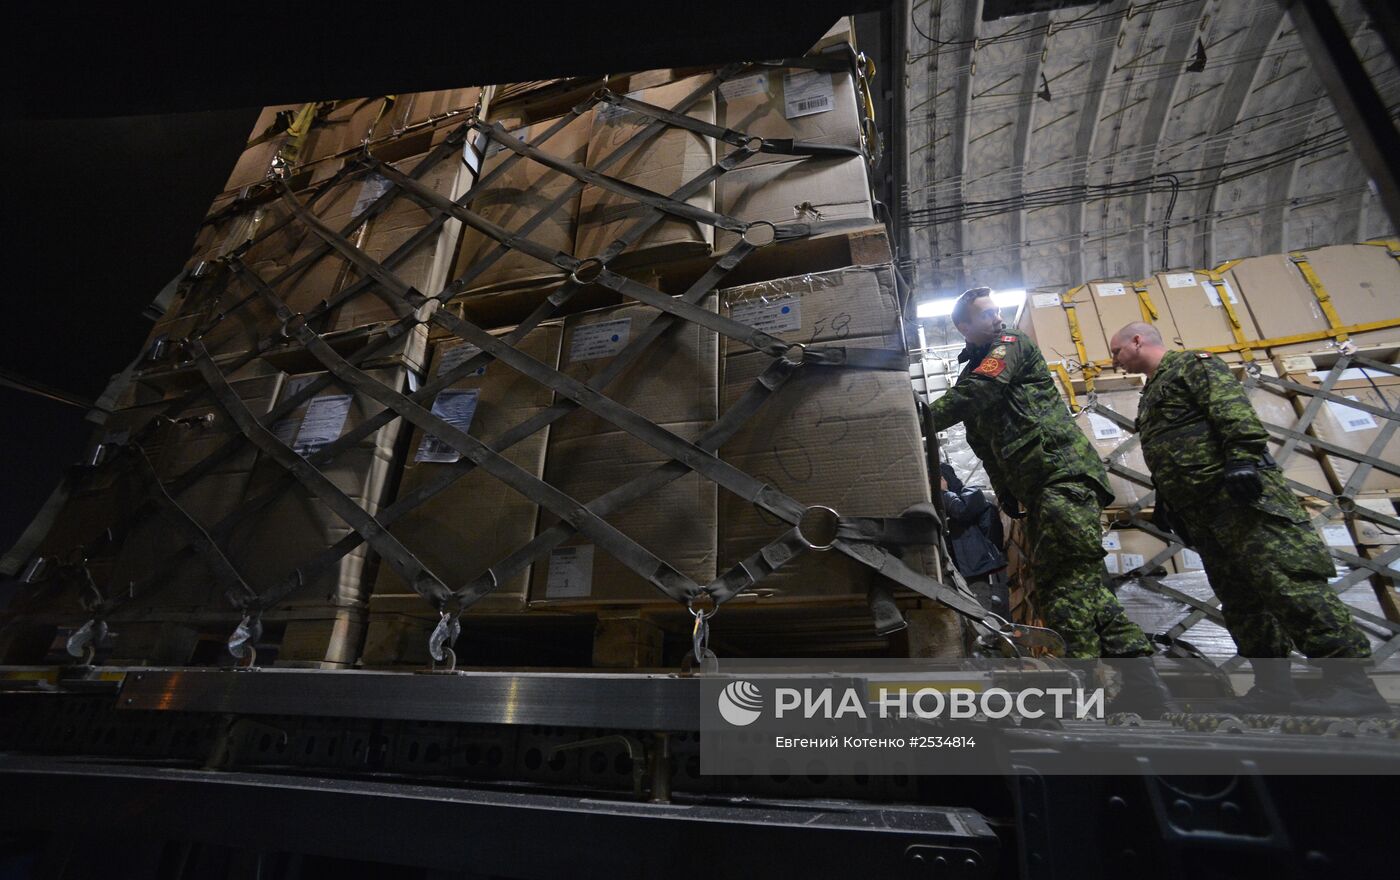 Зимняя форма одежды для военнослужащих ВС Украины доставлена в аэропорт "Борисполь" из Канады